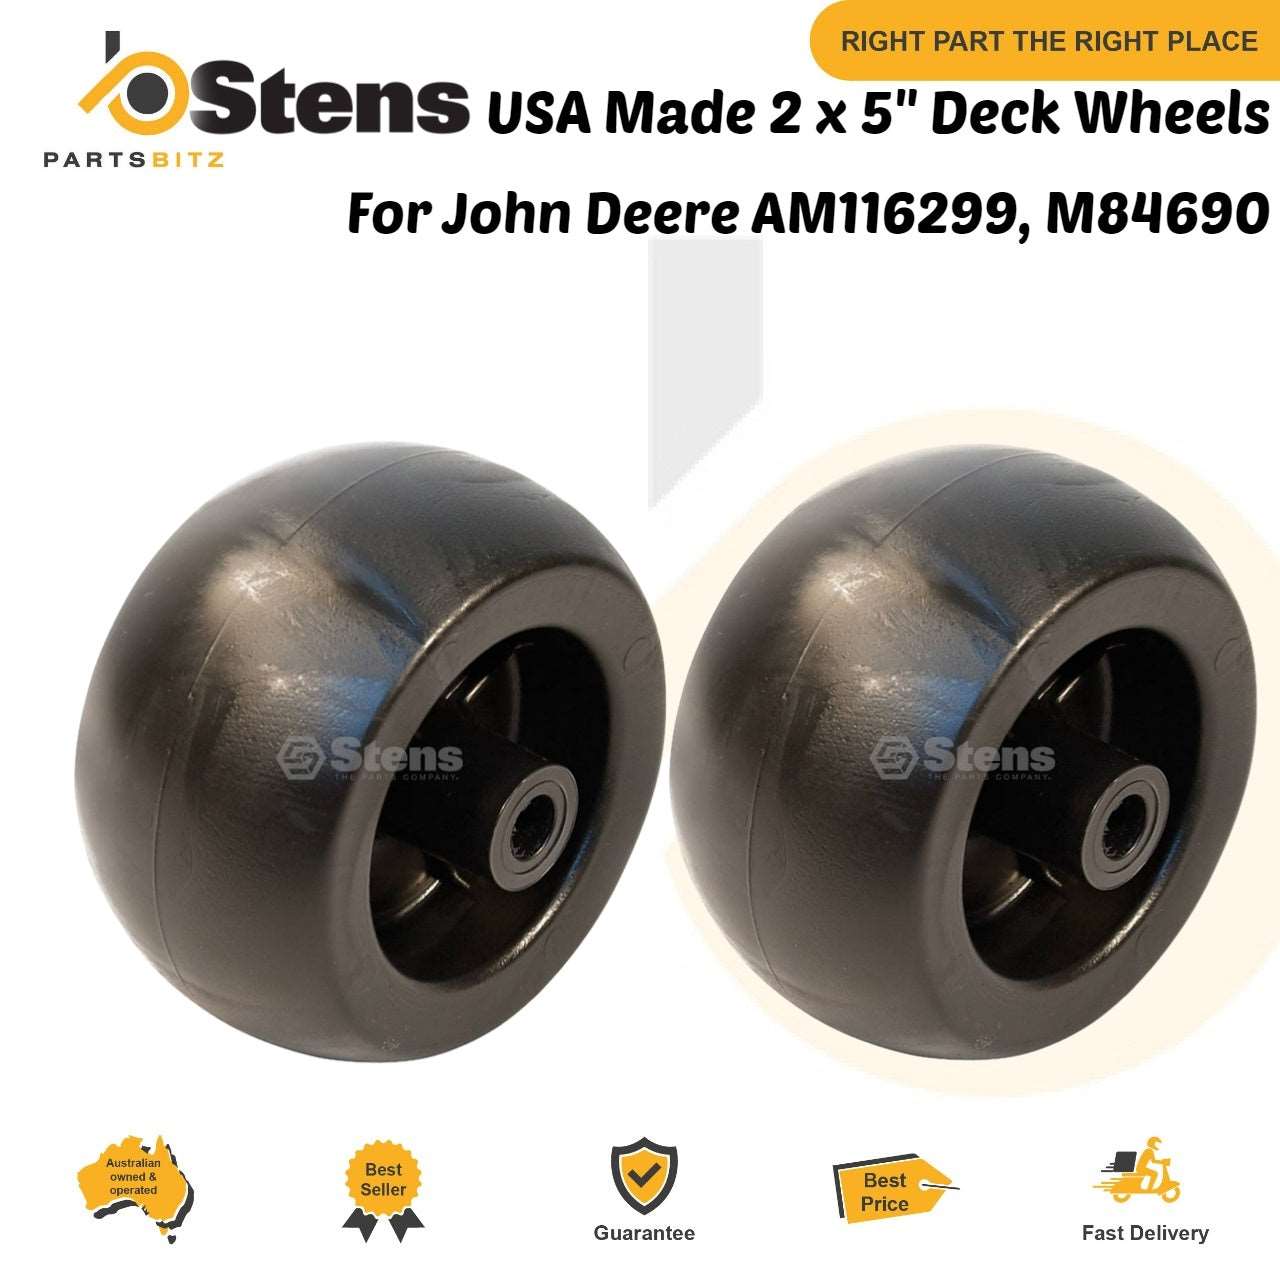 USA Made 2 X 5" Deck Wheels for John Deere AM116299, M84690